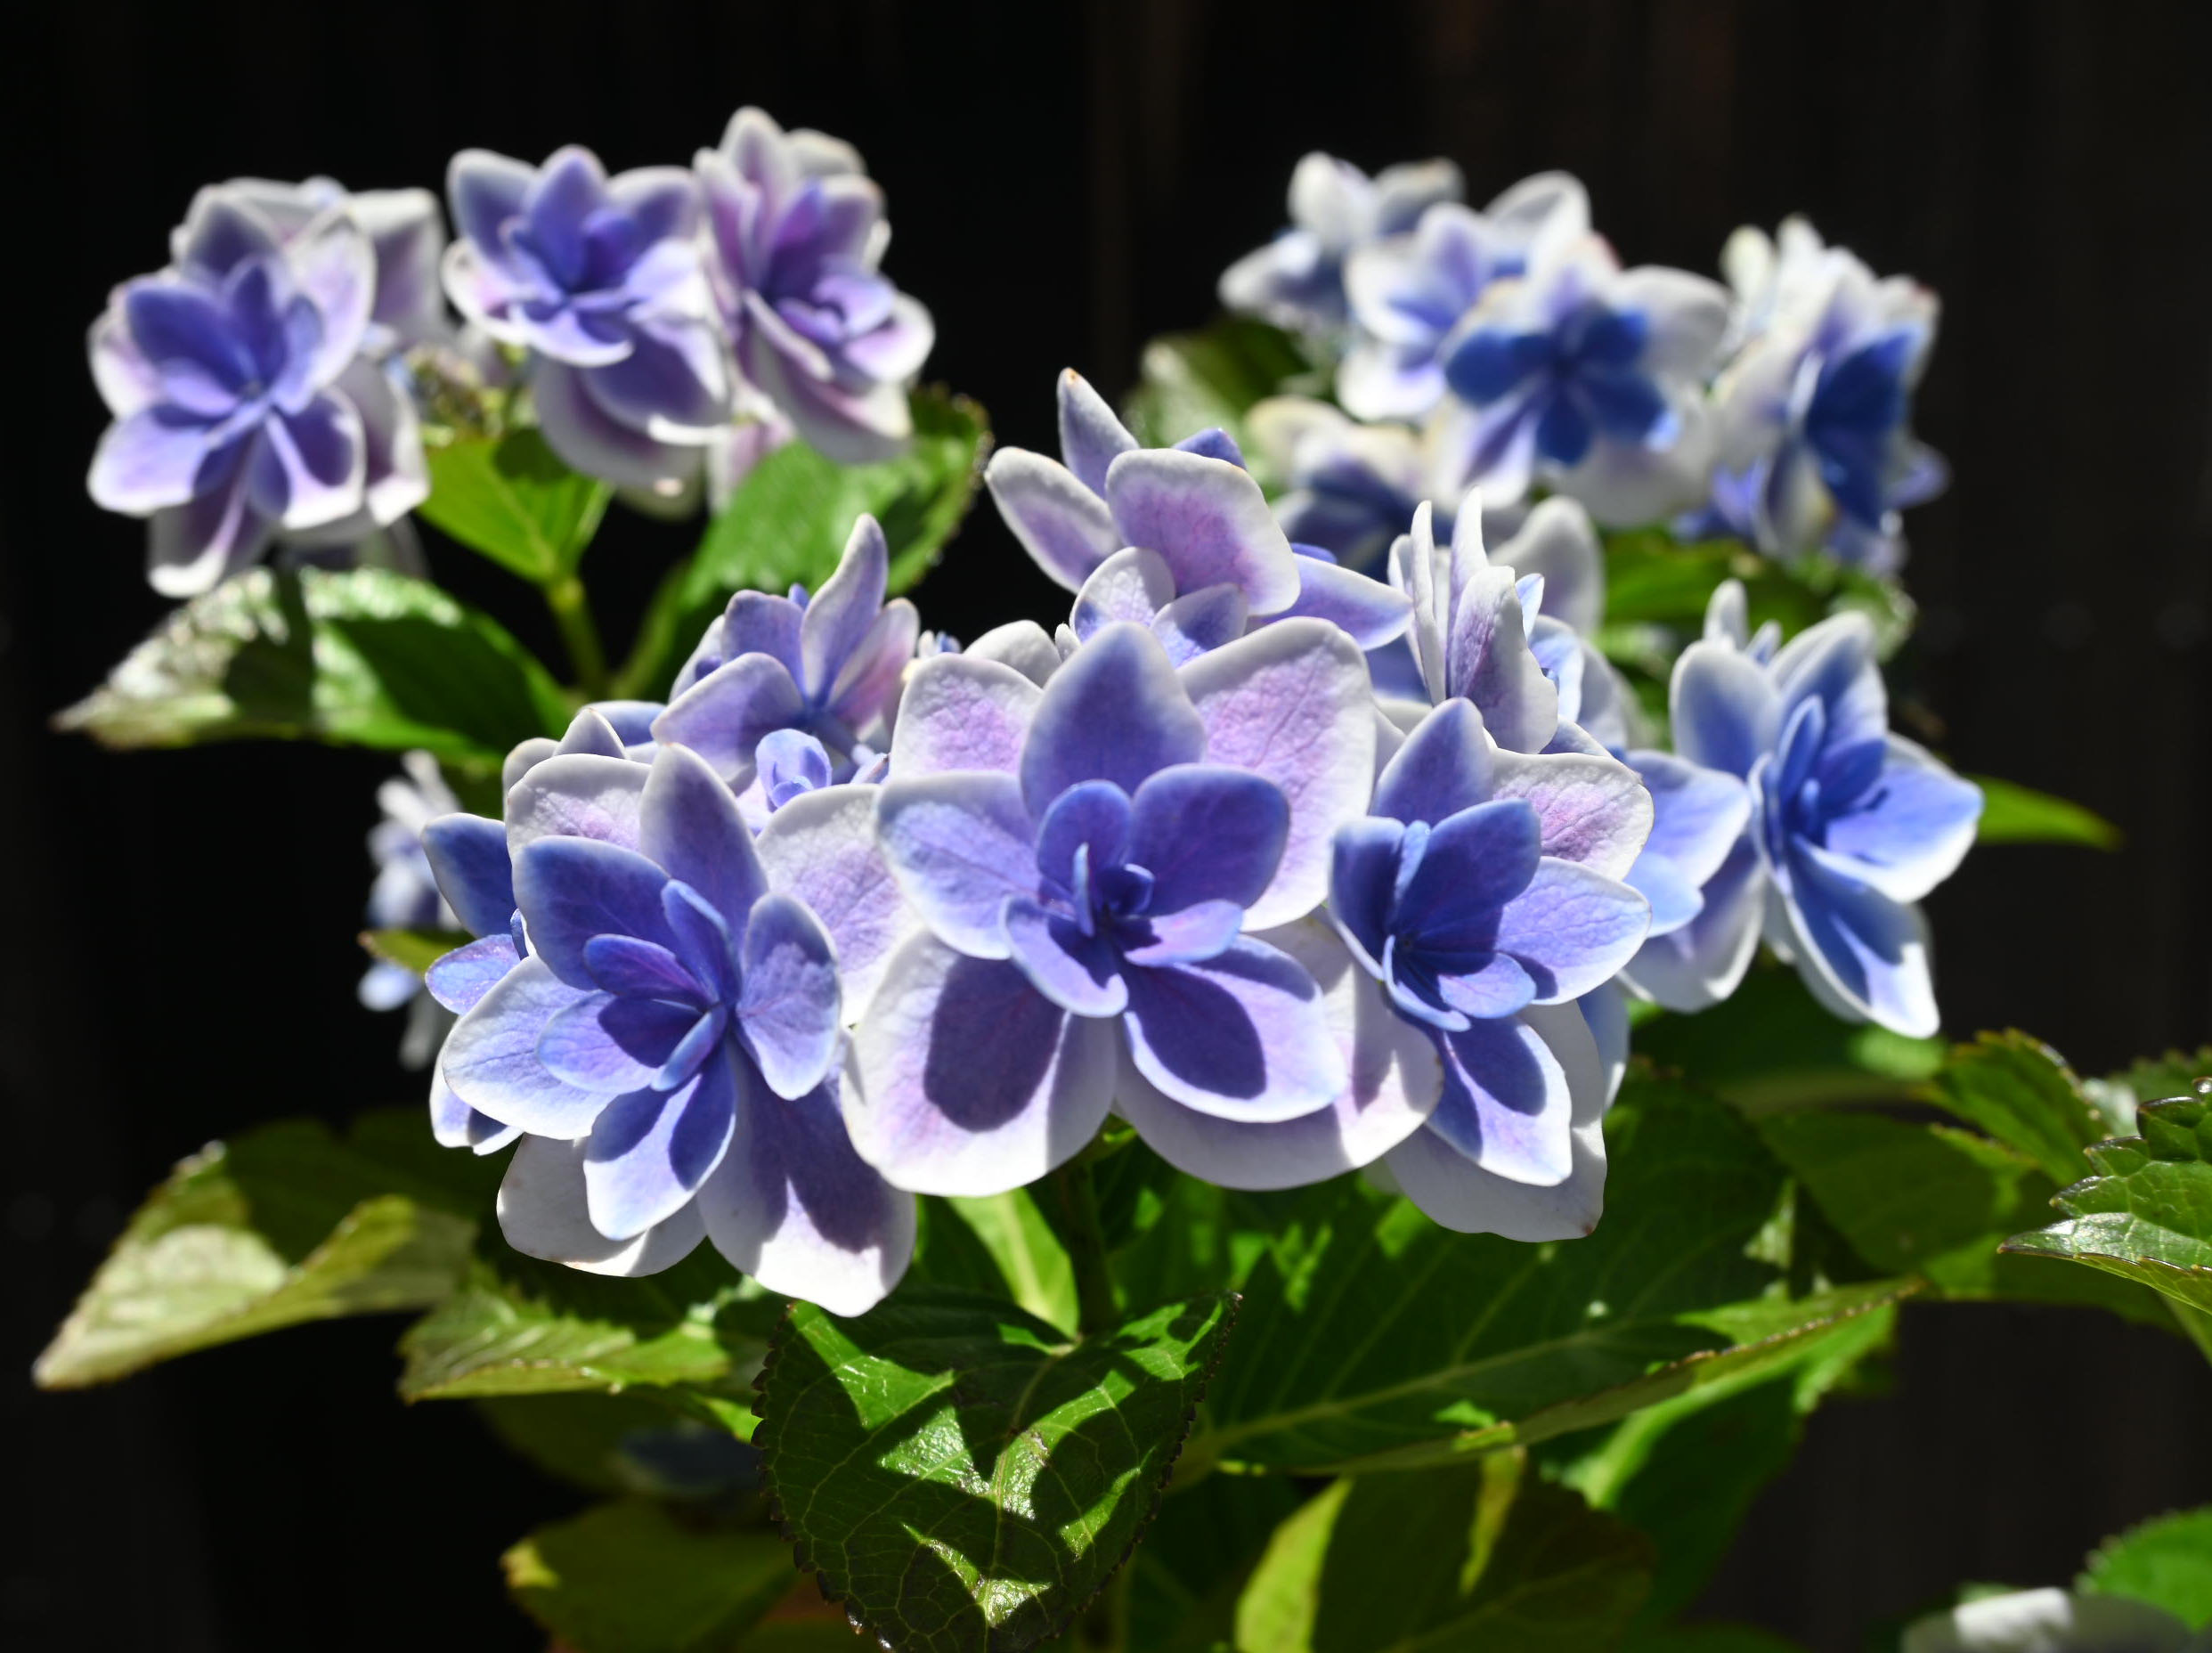 市場 22年剪定後のお届け 育てる紫陽花 コンペイトウスマイル紫陽花 ブルー 肥料付き 紫陽花 剪定した状態でのお届けになります